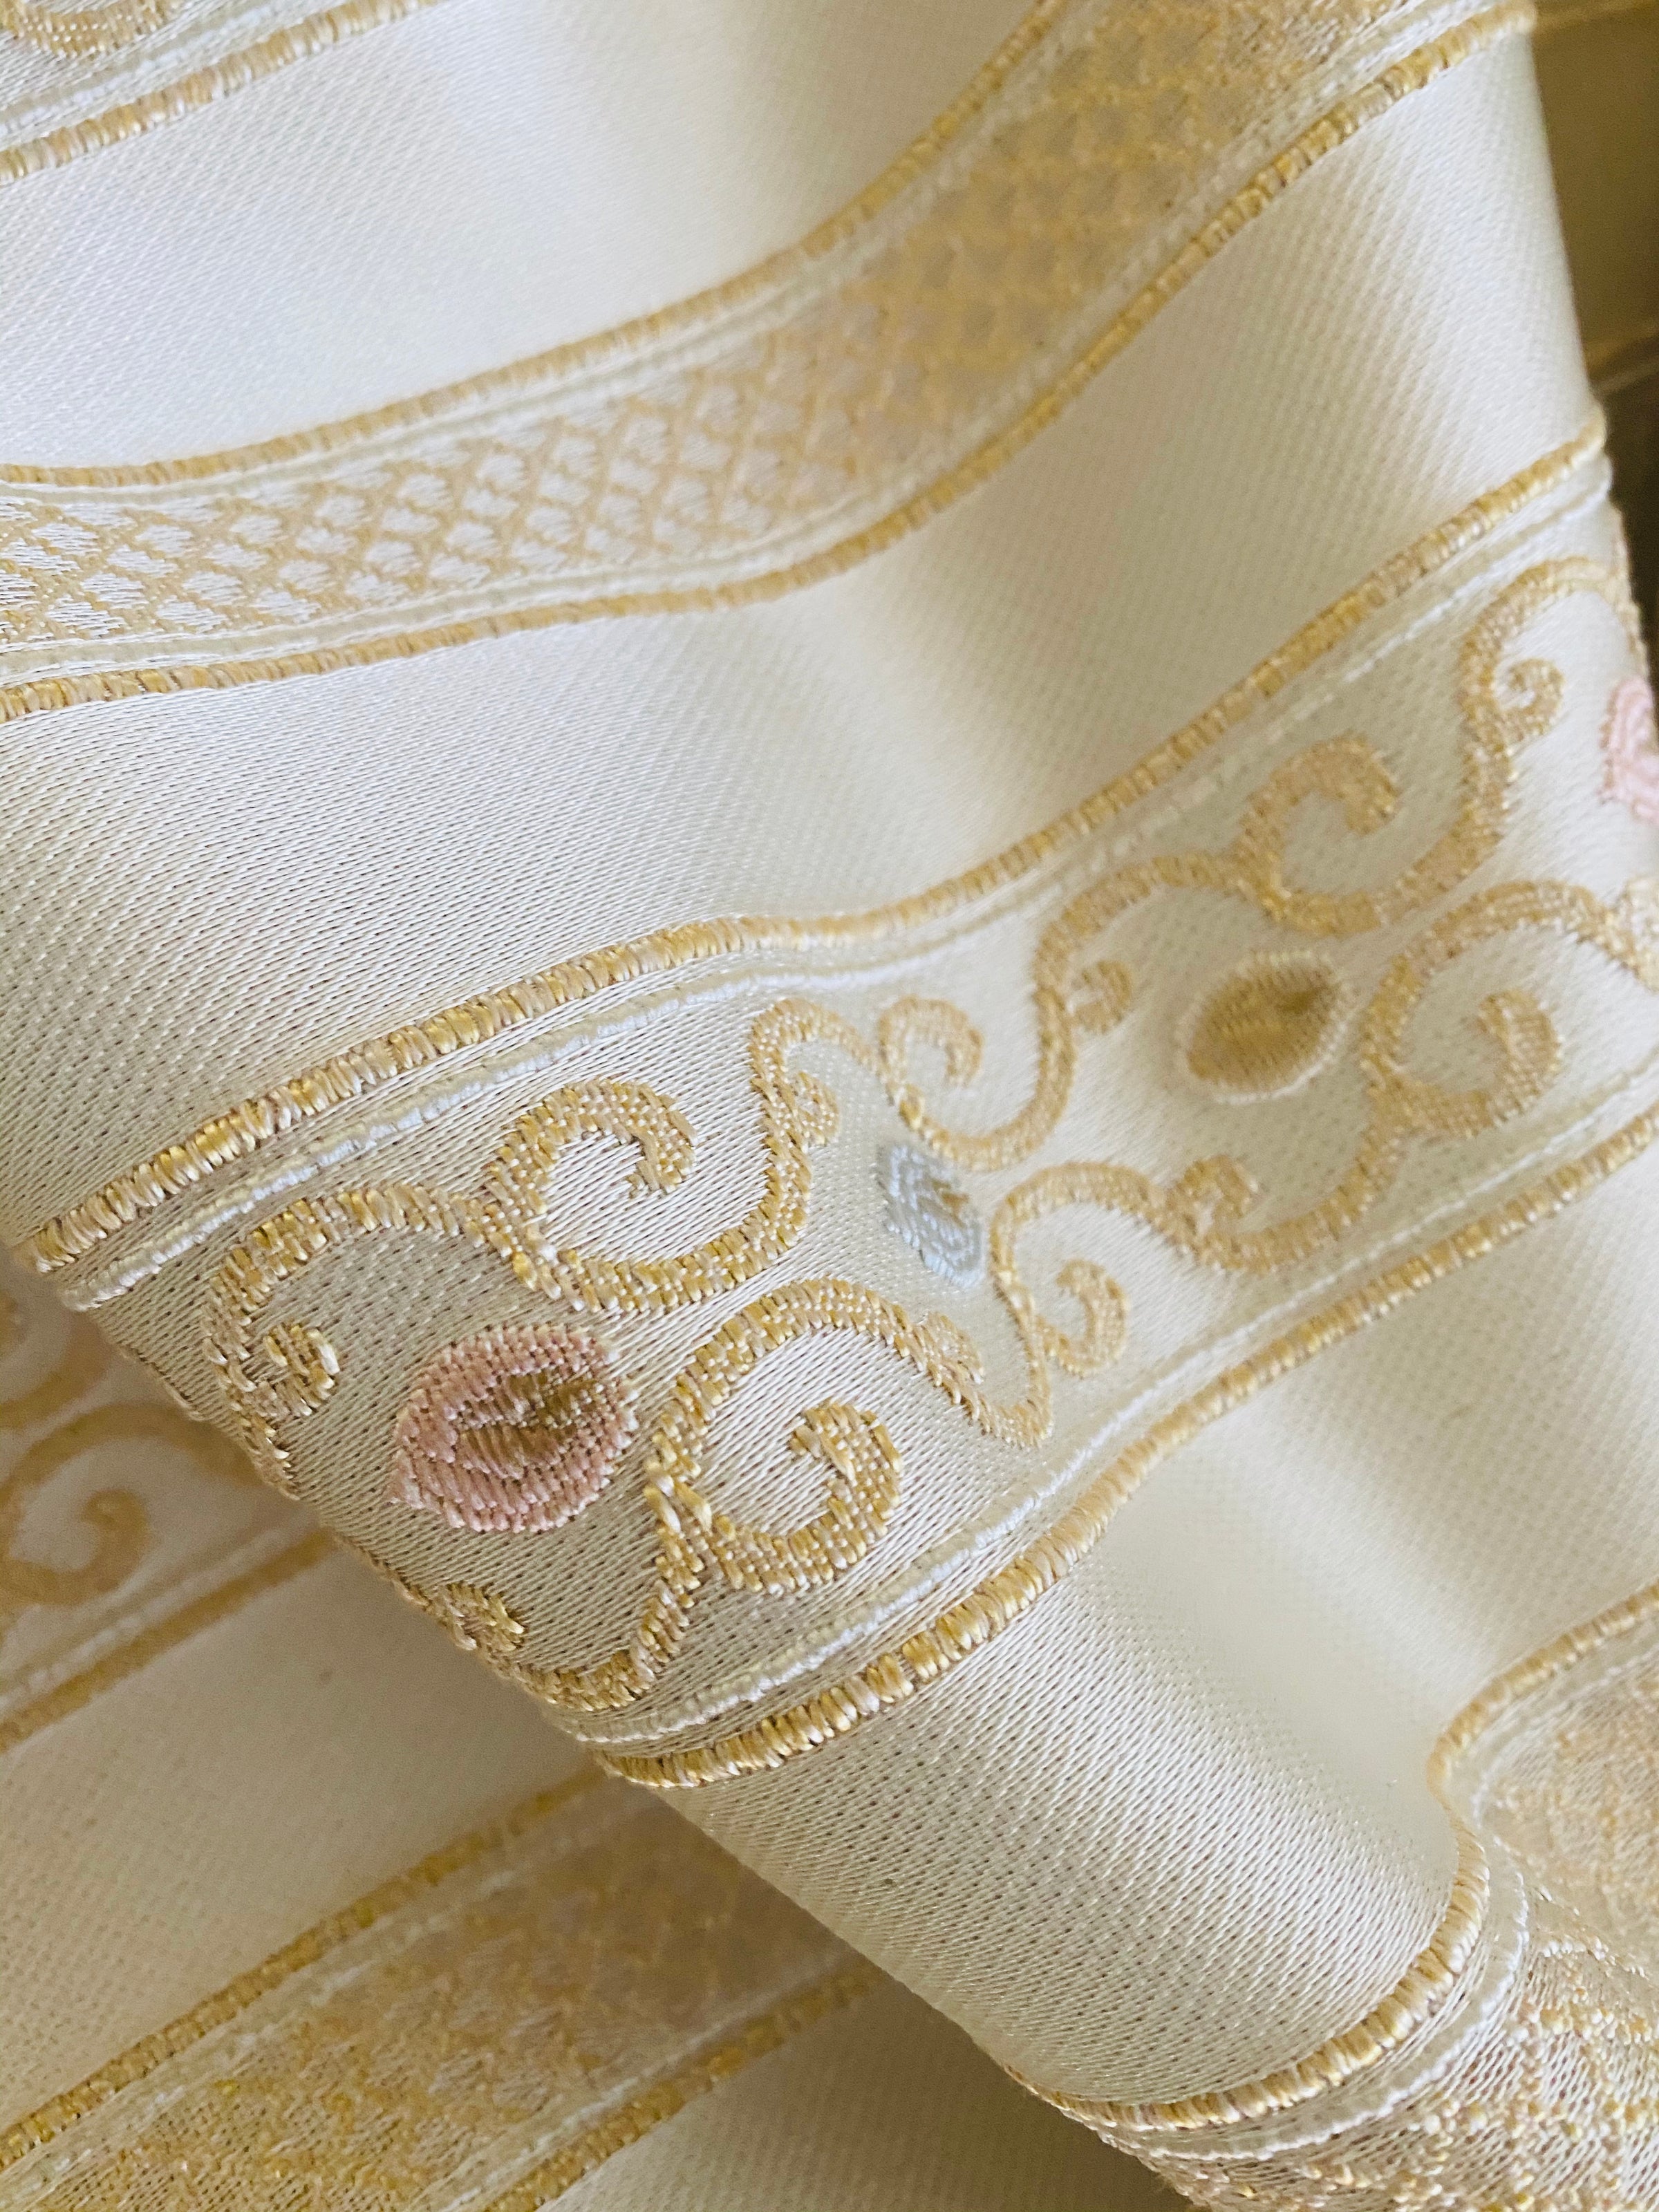 Burgundy Gold Jacquard Flocking Velvet Drapery Upholstery Fabric